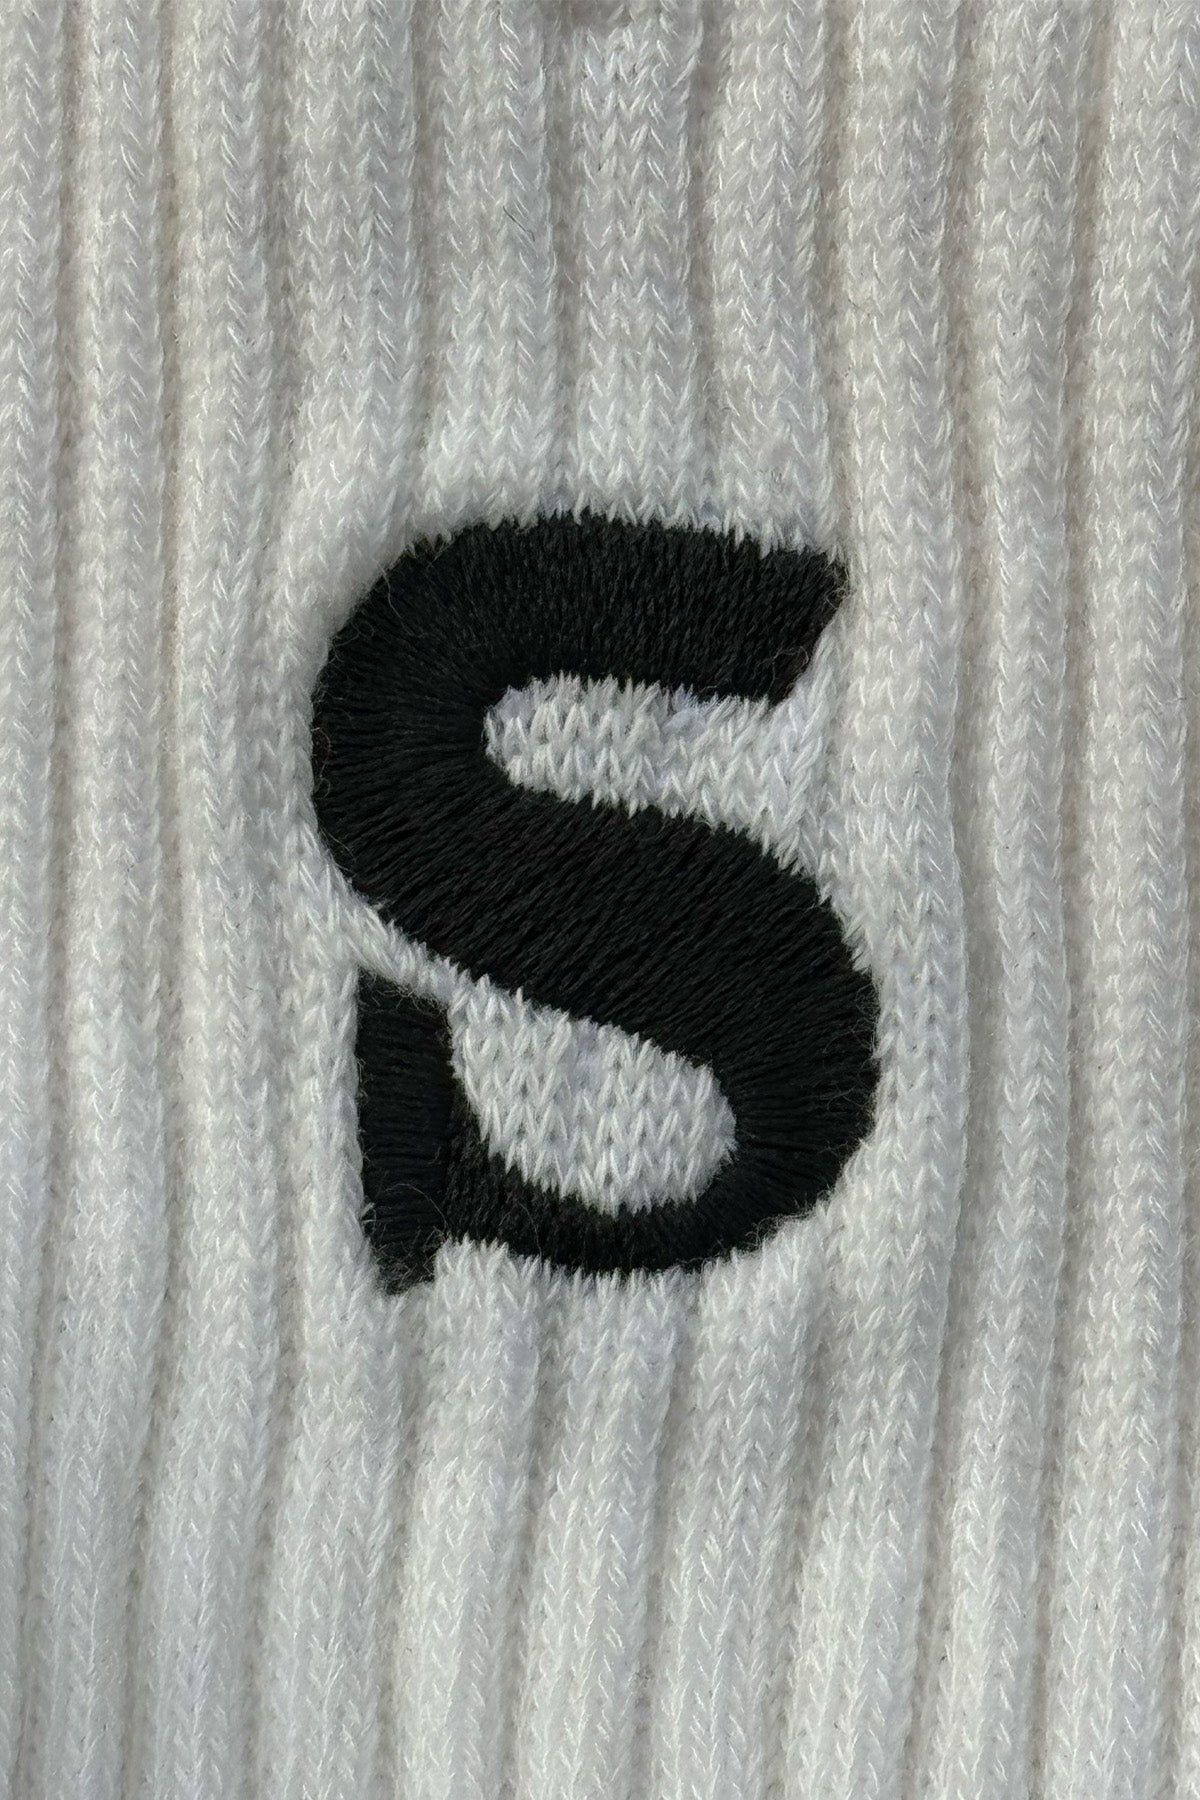 Socrates Logo Havlu Çorap - Beyaz